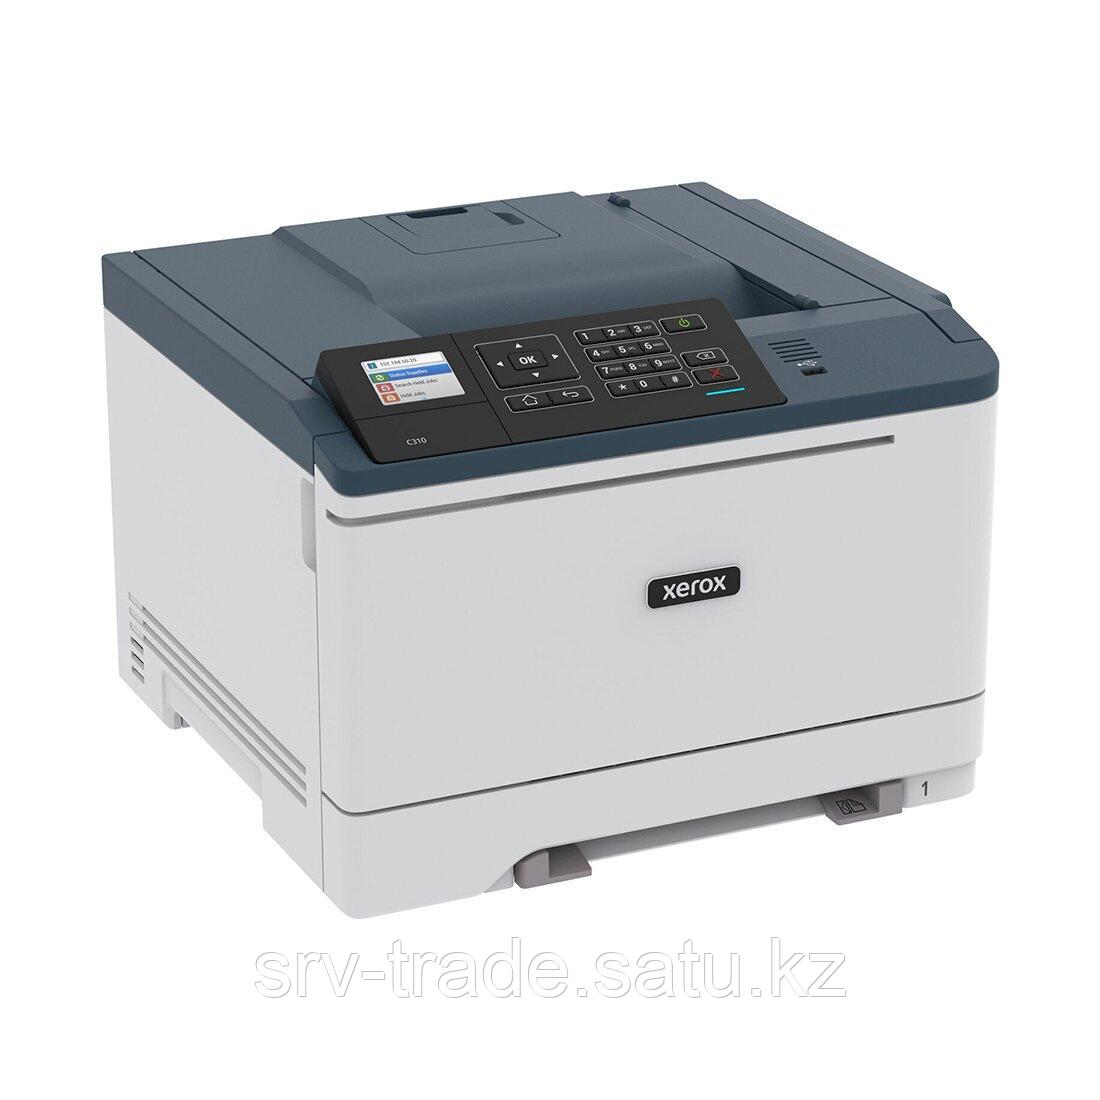 Цветной принтер Xerox C310DNI [A4, лазерный, цветной, 1200 x 1200 DPI, дуплекс, Wi-Fi, Ethernet (RJ-45), USB]